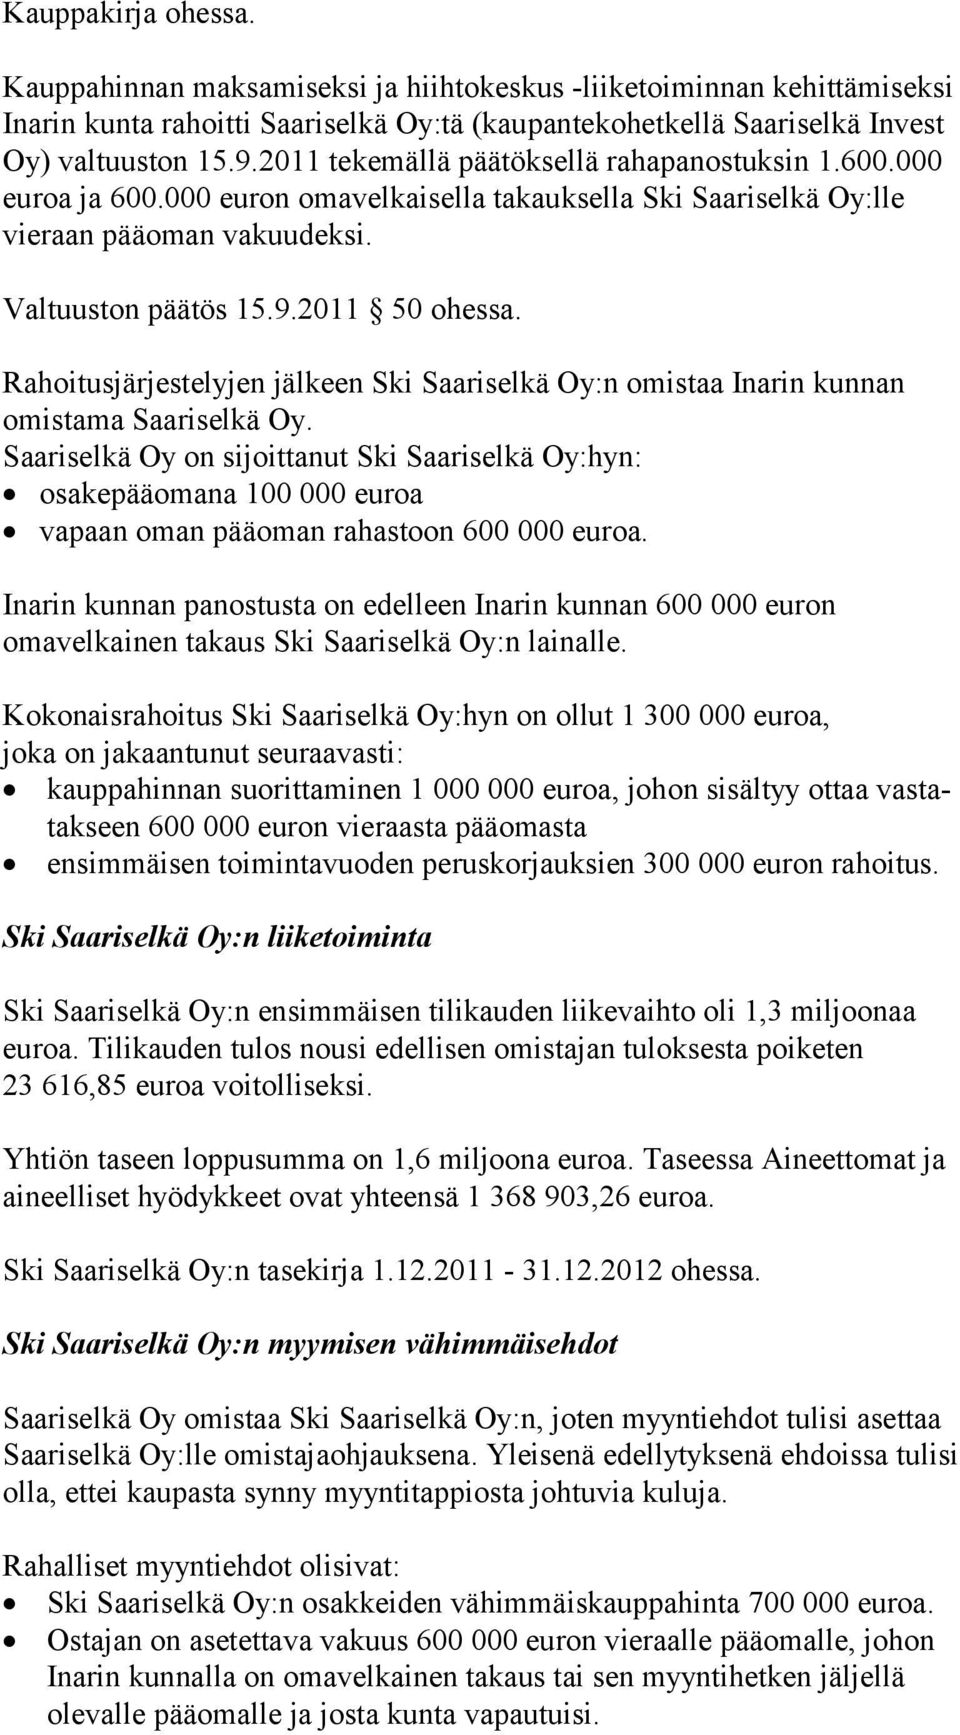 Rahoitusjärjestelyjen jälkeen Ski Saariselkä Oy:n omistaa Inarin kunnan omis ta ma Saa ri sel kä Oy.